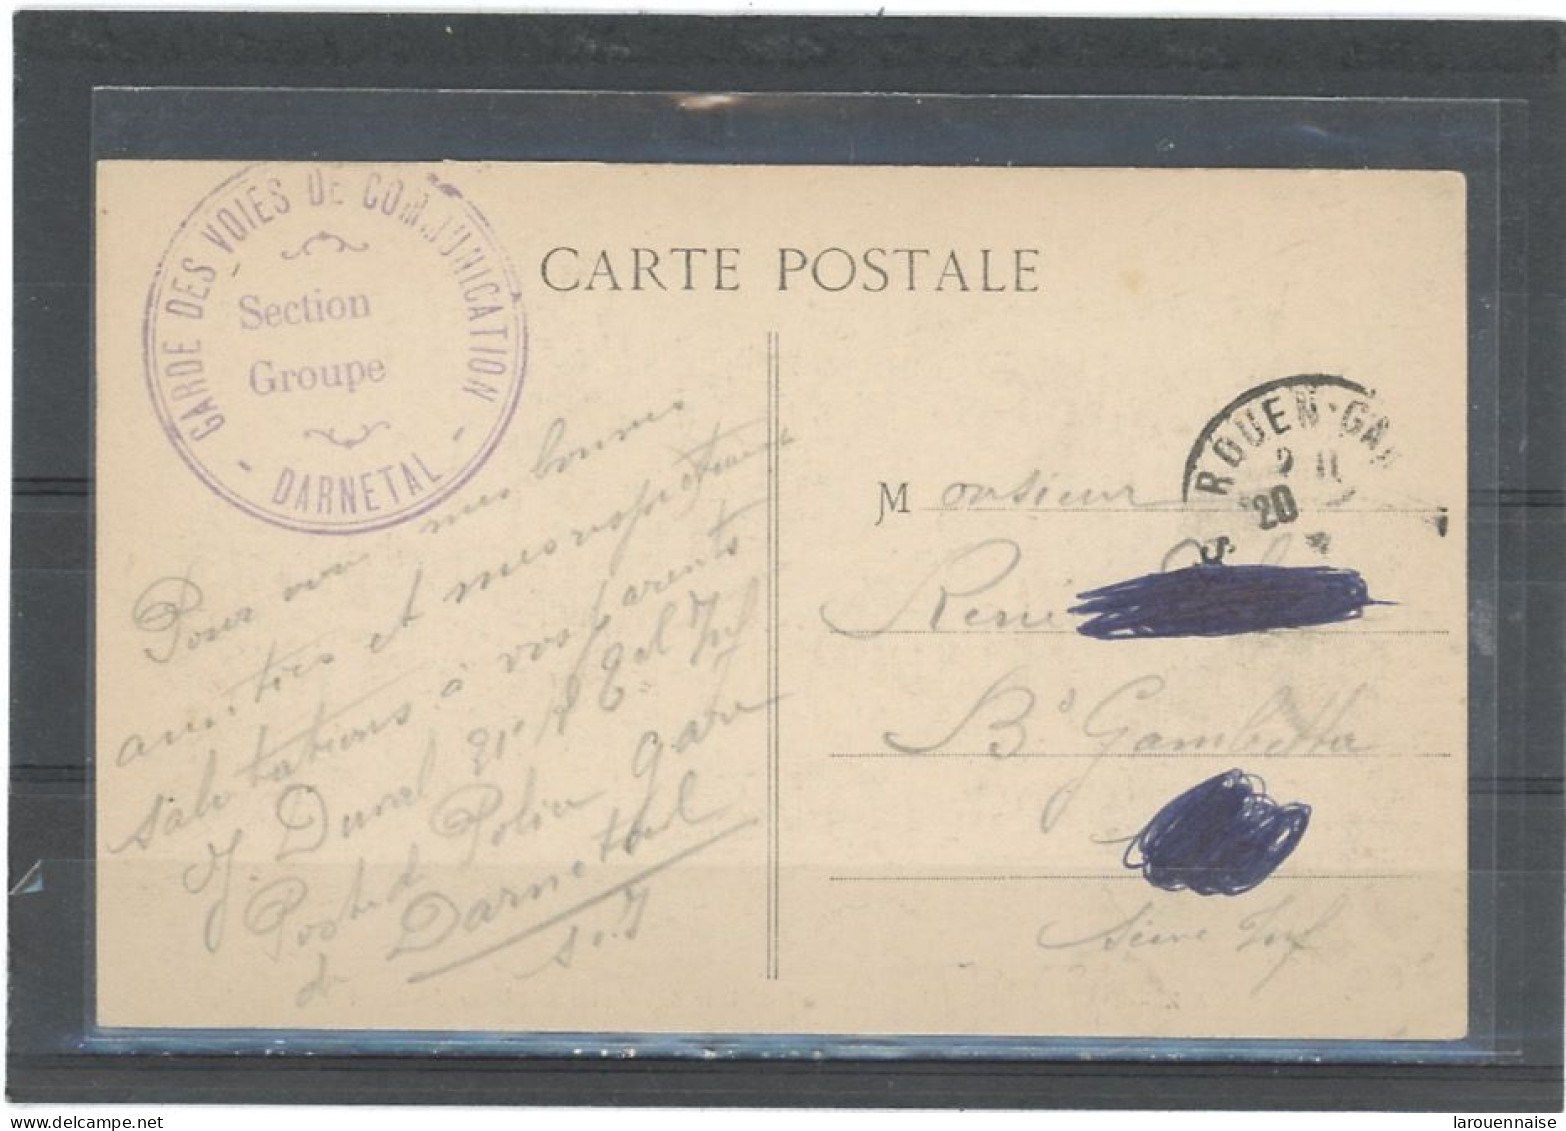 CACHET MILITAIRE -76 DARNETAL -CP- FRAPPE TTB-GARDE DES VOIES DE COMMUNICATION /DARNETAL - 1. Weltkrieg 1914-1918